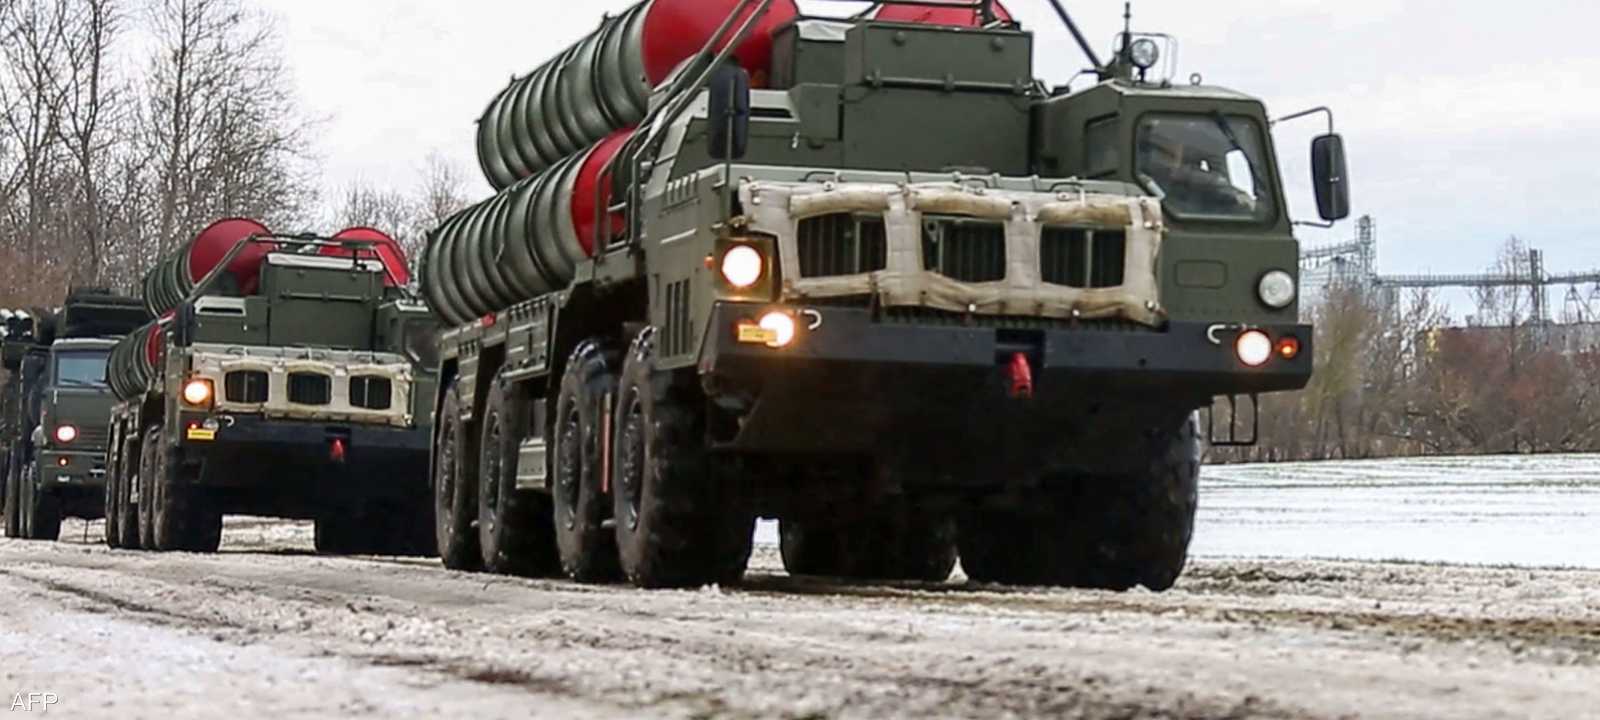 روسيا ستحتفظ بالسيطرة على الأسلحة التي ترسلها إلى بيلاروسيا